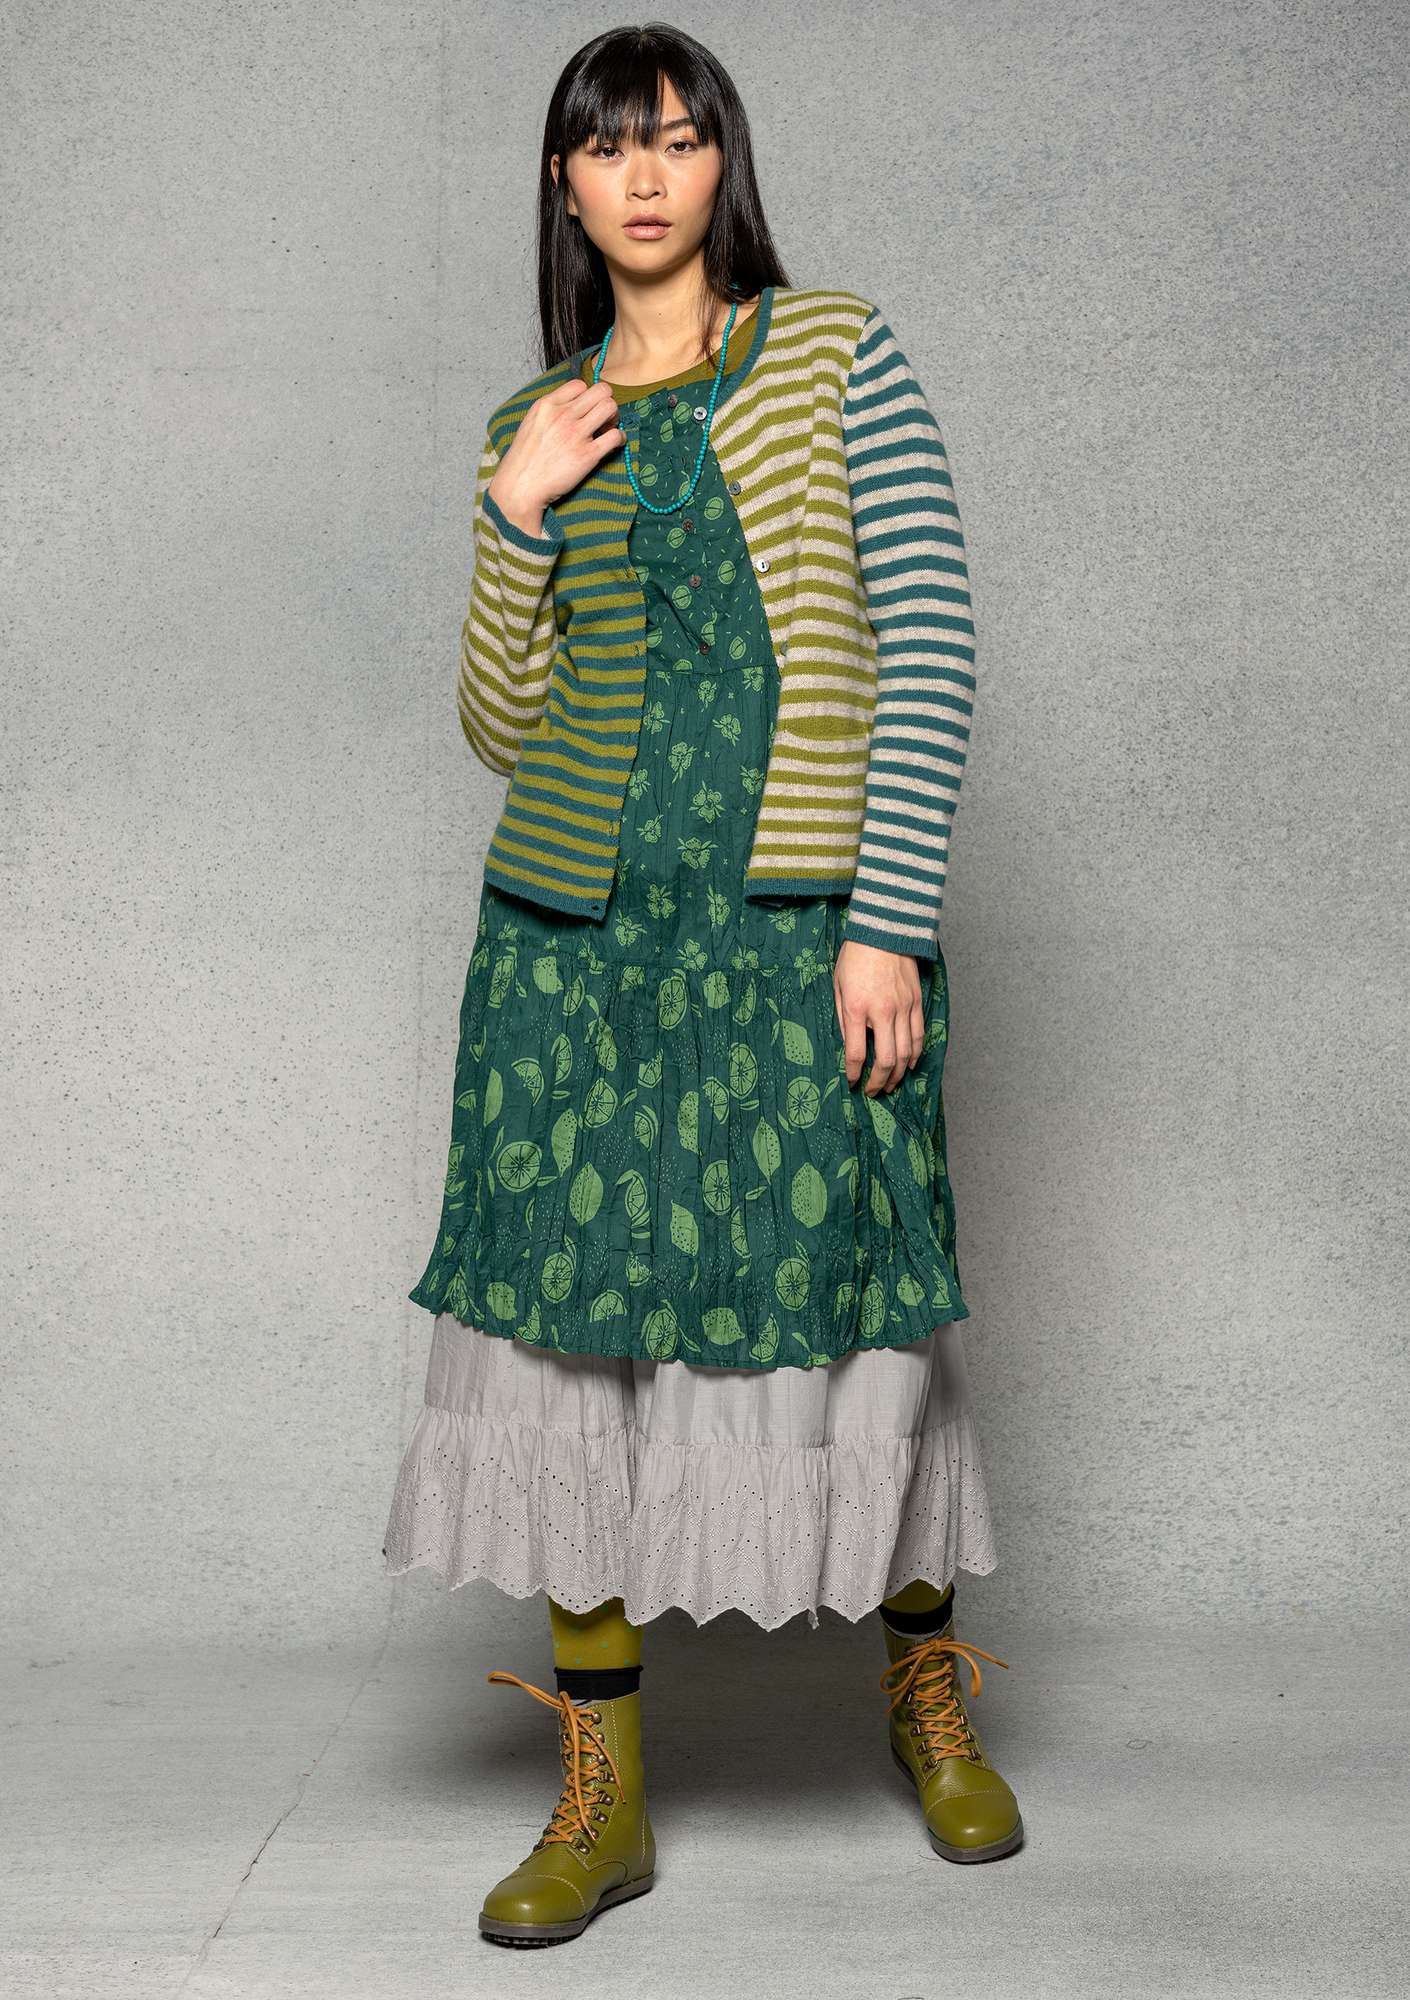 Vevd kjole «Fruits» i økologisk / resirkulert bomull flaskegrønn/mønstret thumbnail